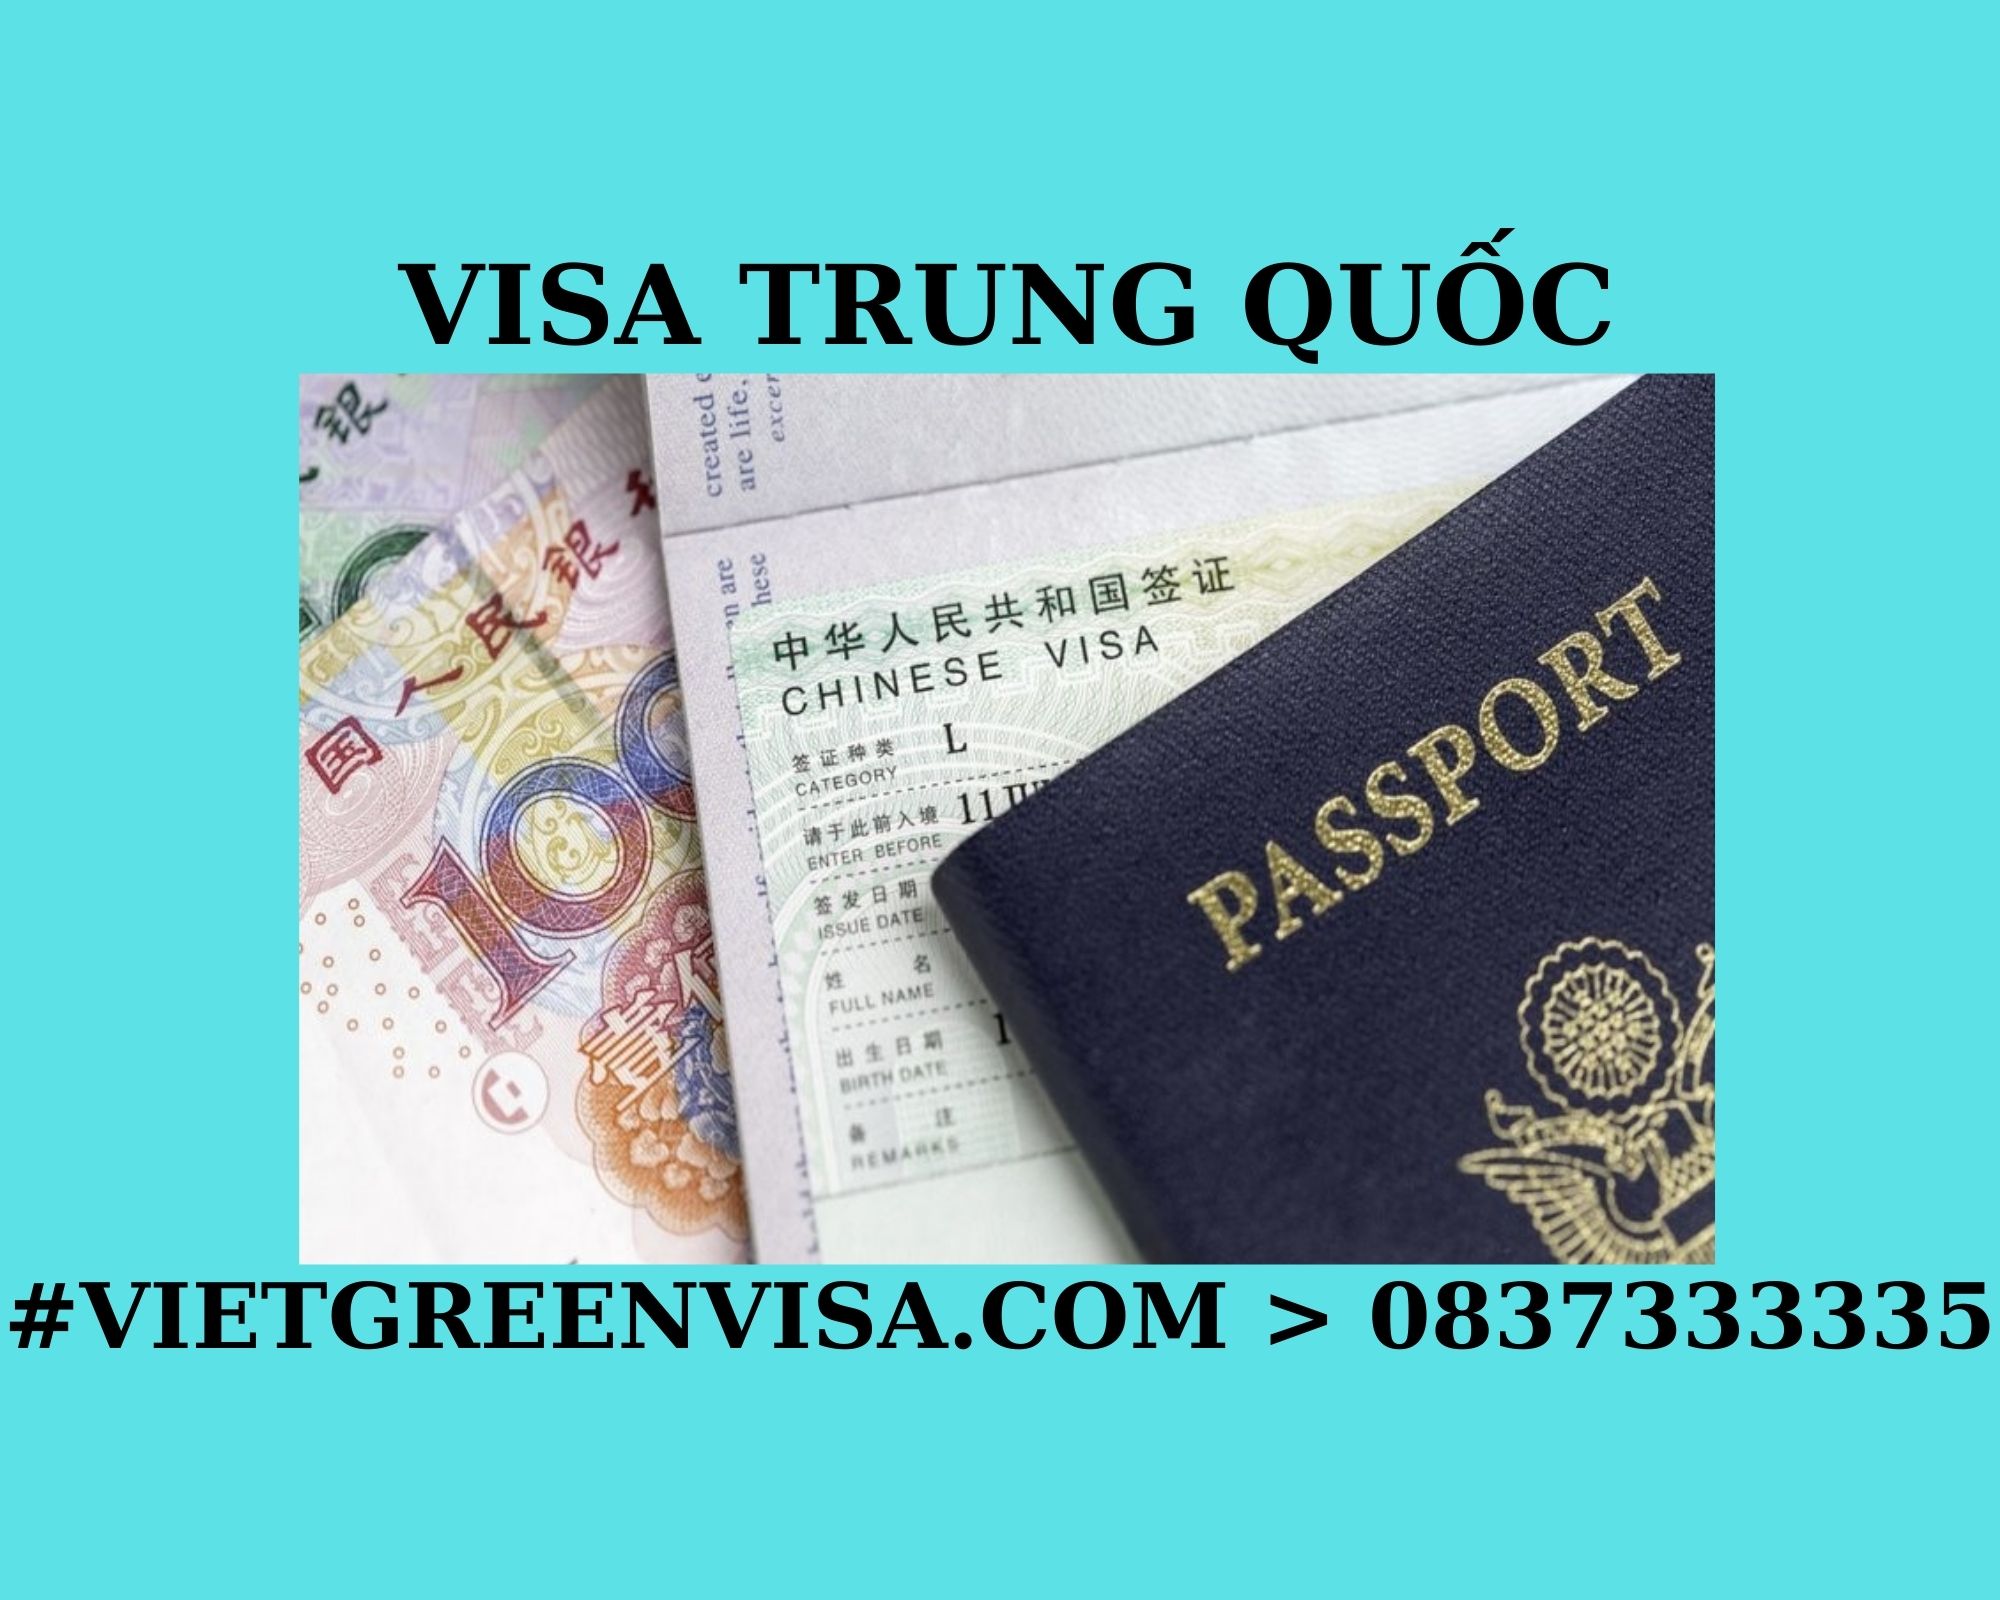 Dịch vụ xin visa Trung Quốc trọn gói. Du Lịch Xanh